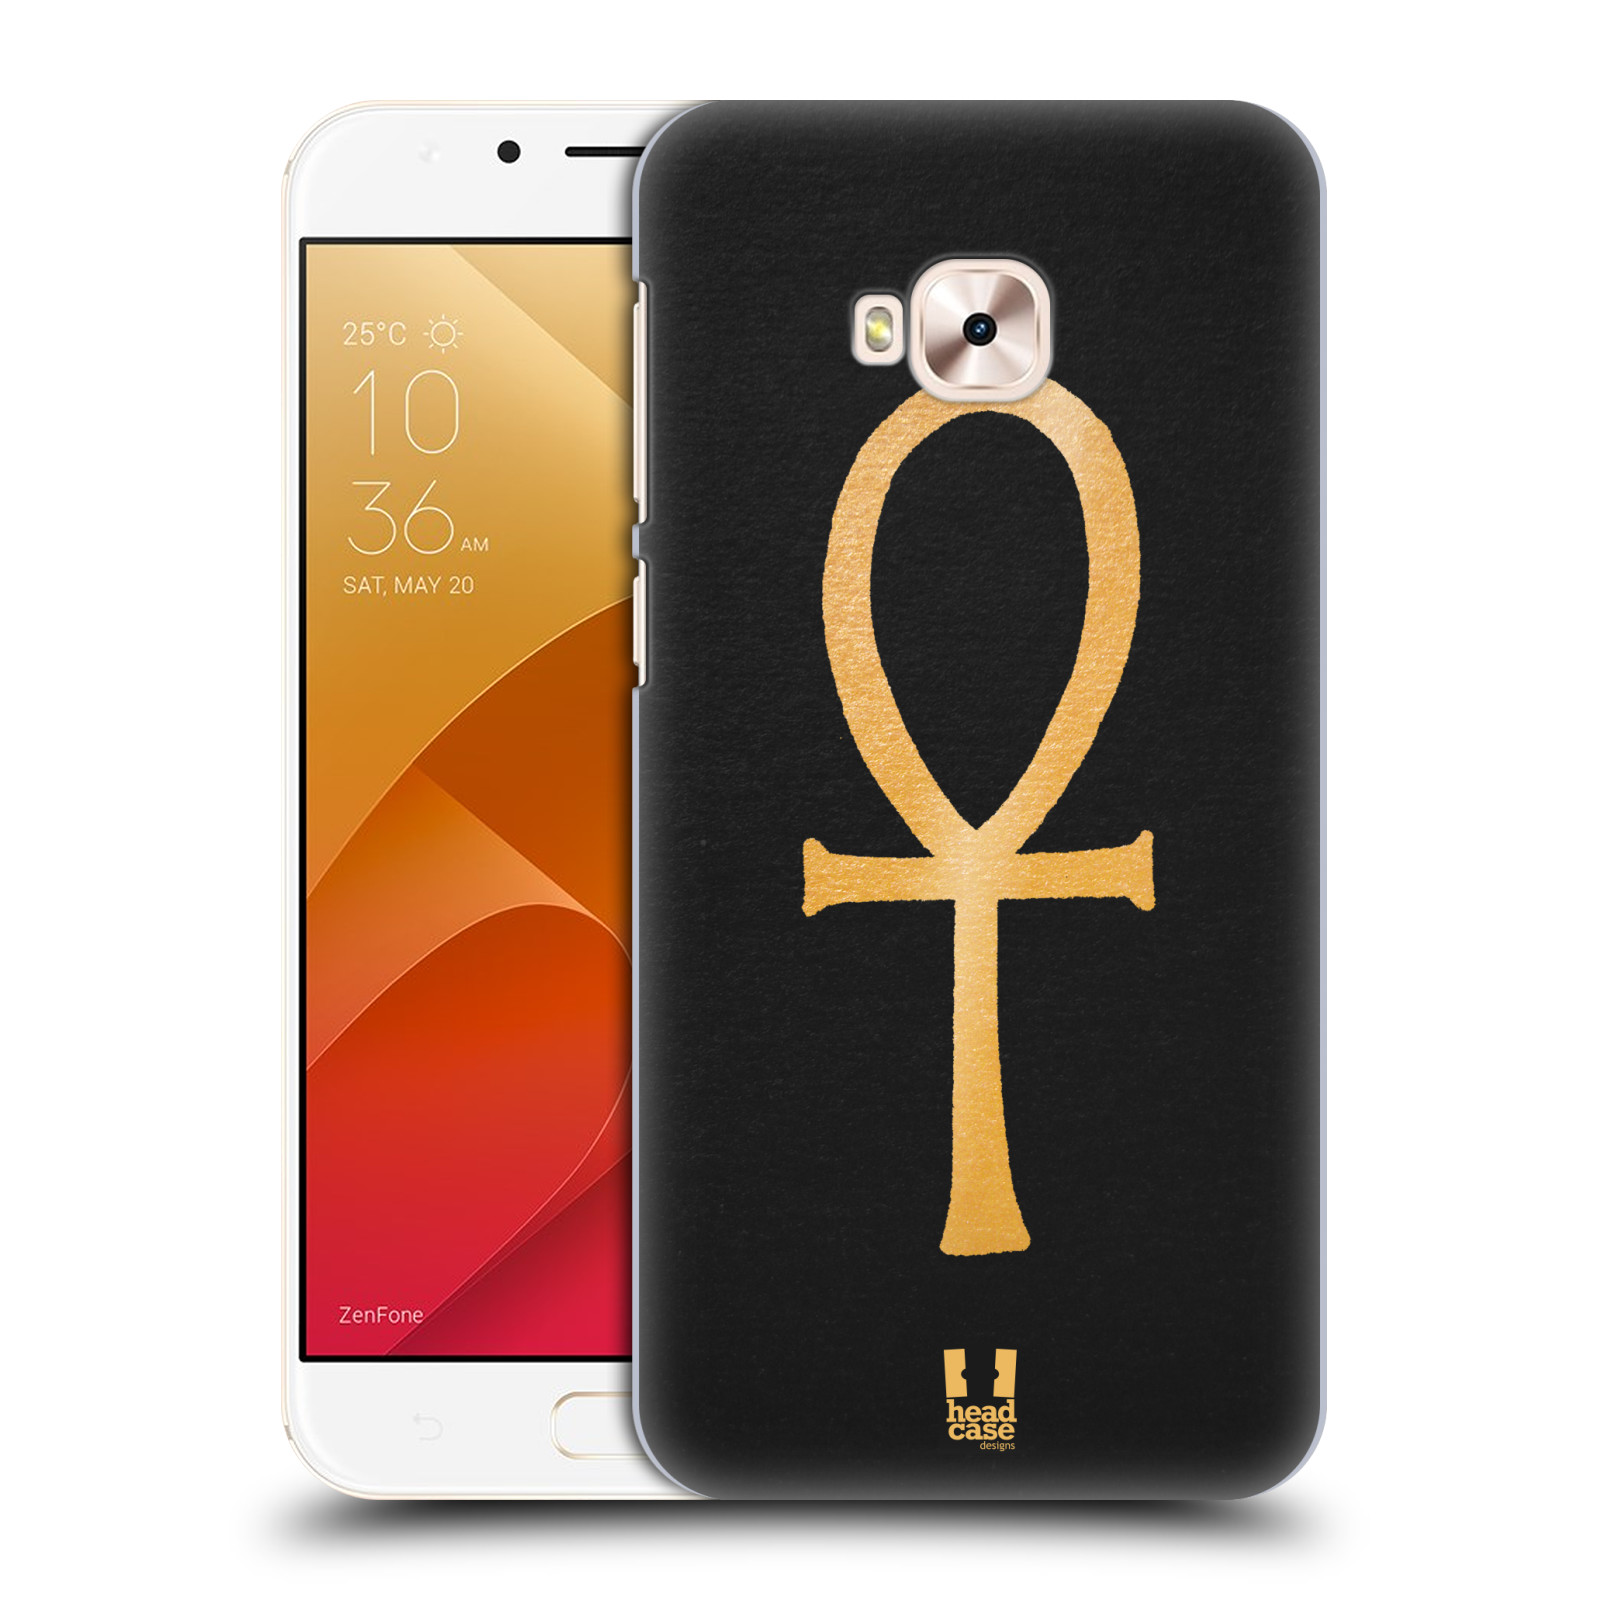 HEAD CASE plastový obal na mobil Asus Zenfone 4 Selfie Pro ZD552KL vzor EGYPT zlatá a černá SYMBOL ŽIVOTA